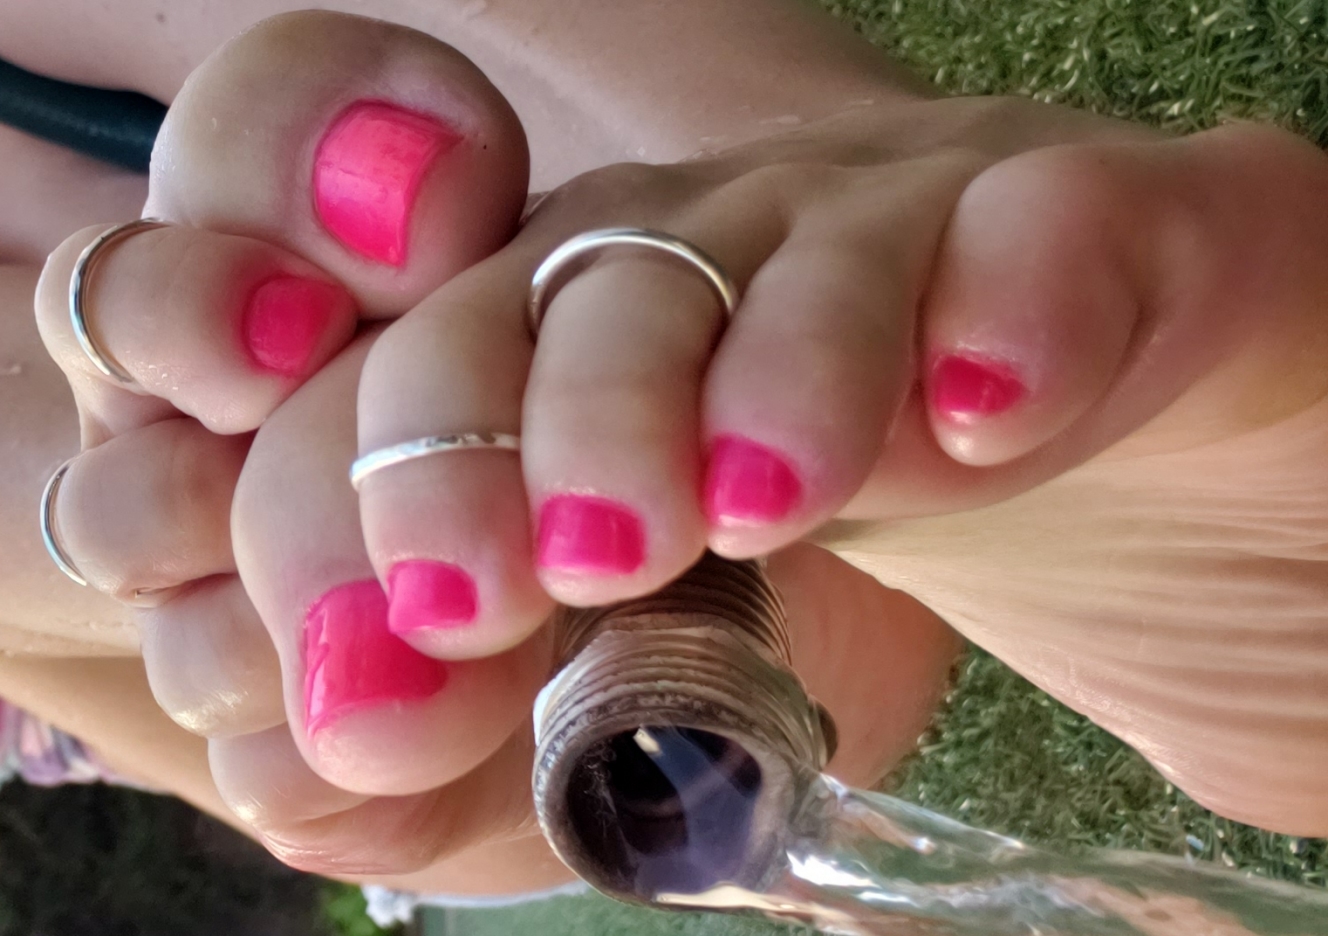 content/neon-pink-wet-toes/0.jpg